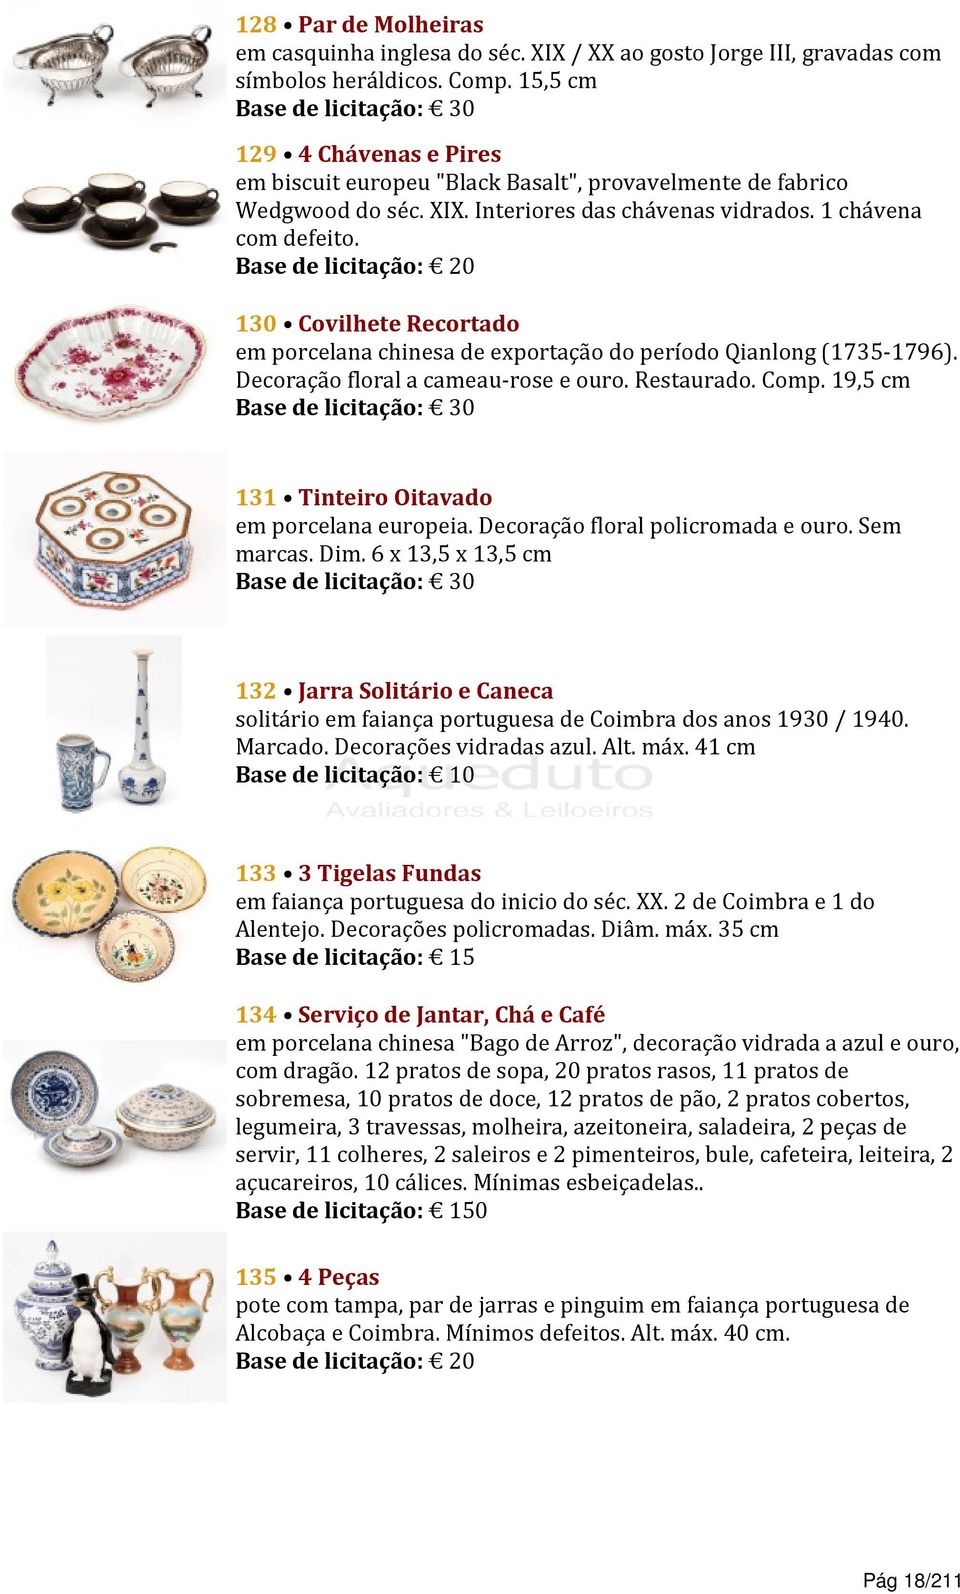 130 Covilhete Recortado em porcelana chinesa de exportação do período Qianlong (1735-1796). Decoração floral a cameau-rose e ouro. Restaurado. Comp.